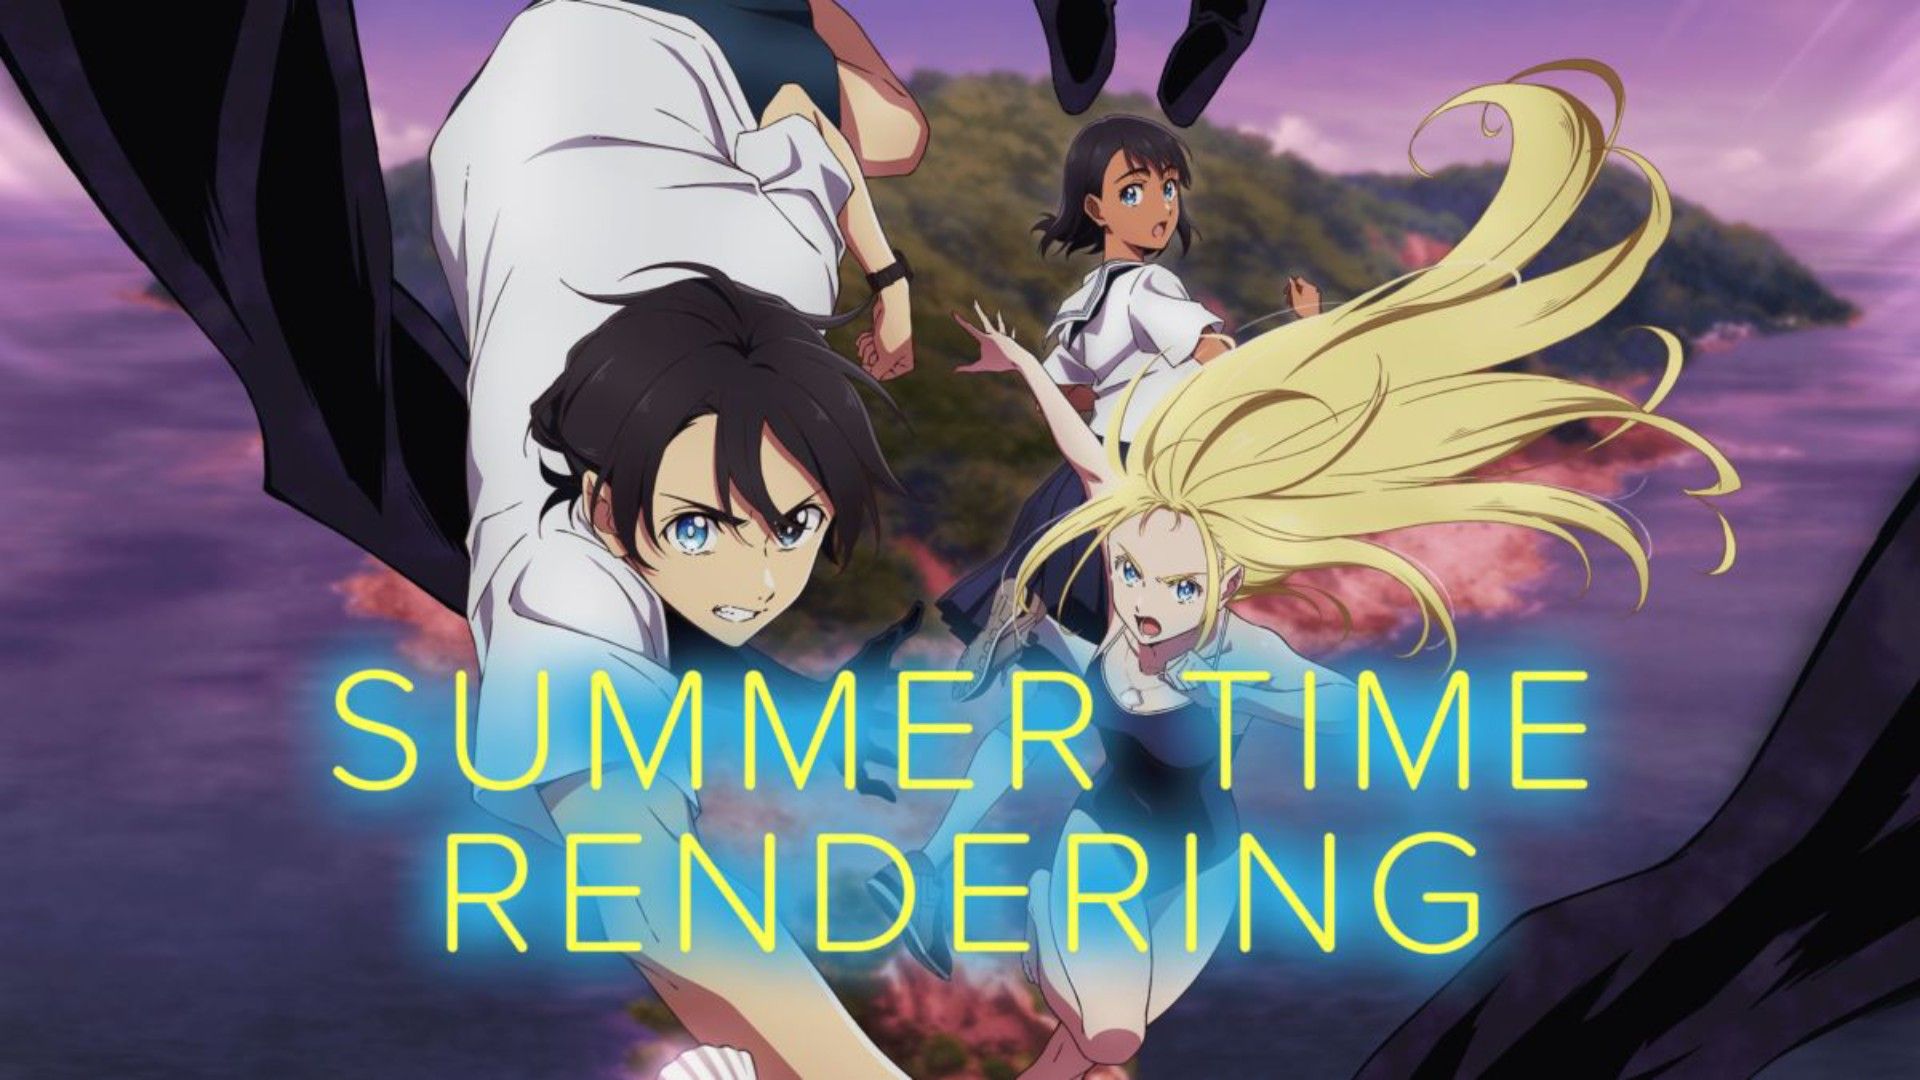 Summertime Rendering episode 1 #summertimerendering #anime #animespoiler  #animespring2022 #weeb #weaboo #animegirls #otaku…